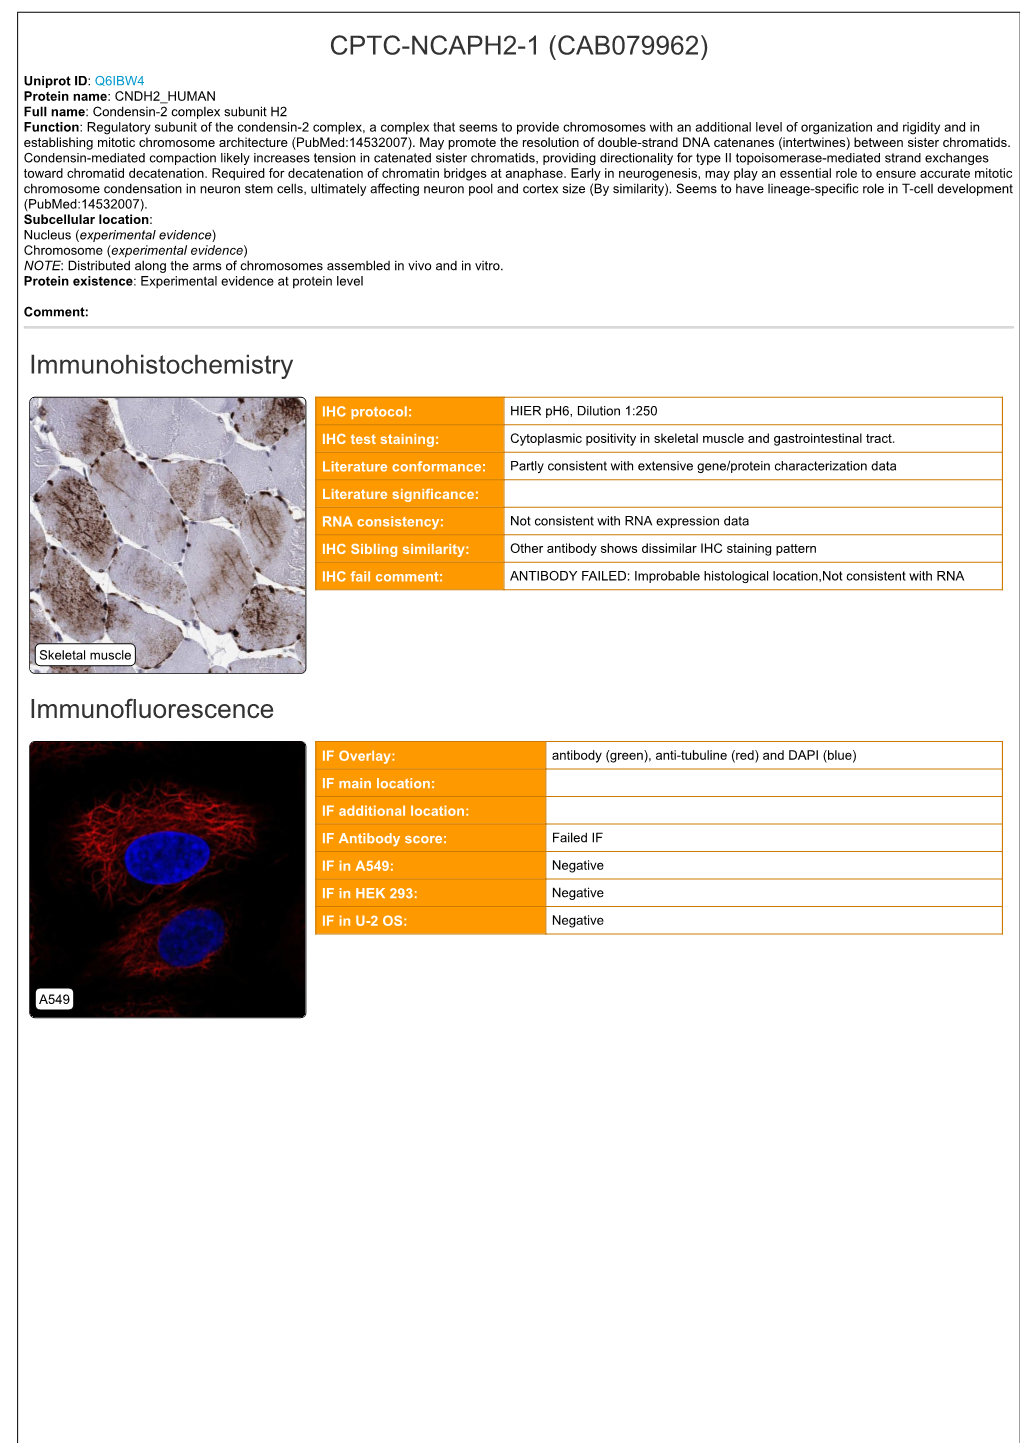 CPTC-NCAPH2-1 (CAB079962) Immunohistochemistry Immunofluorescence